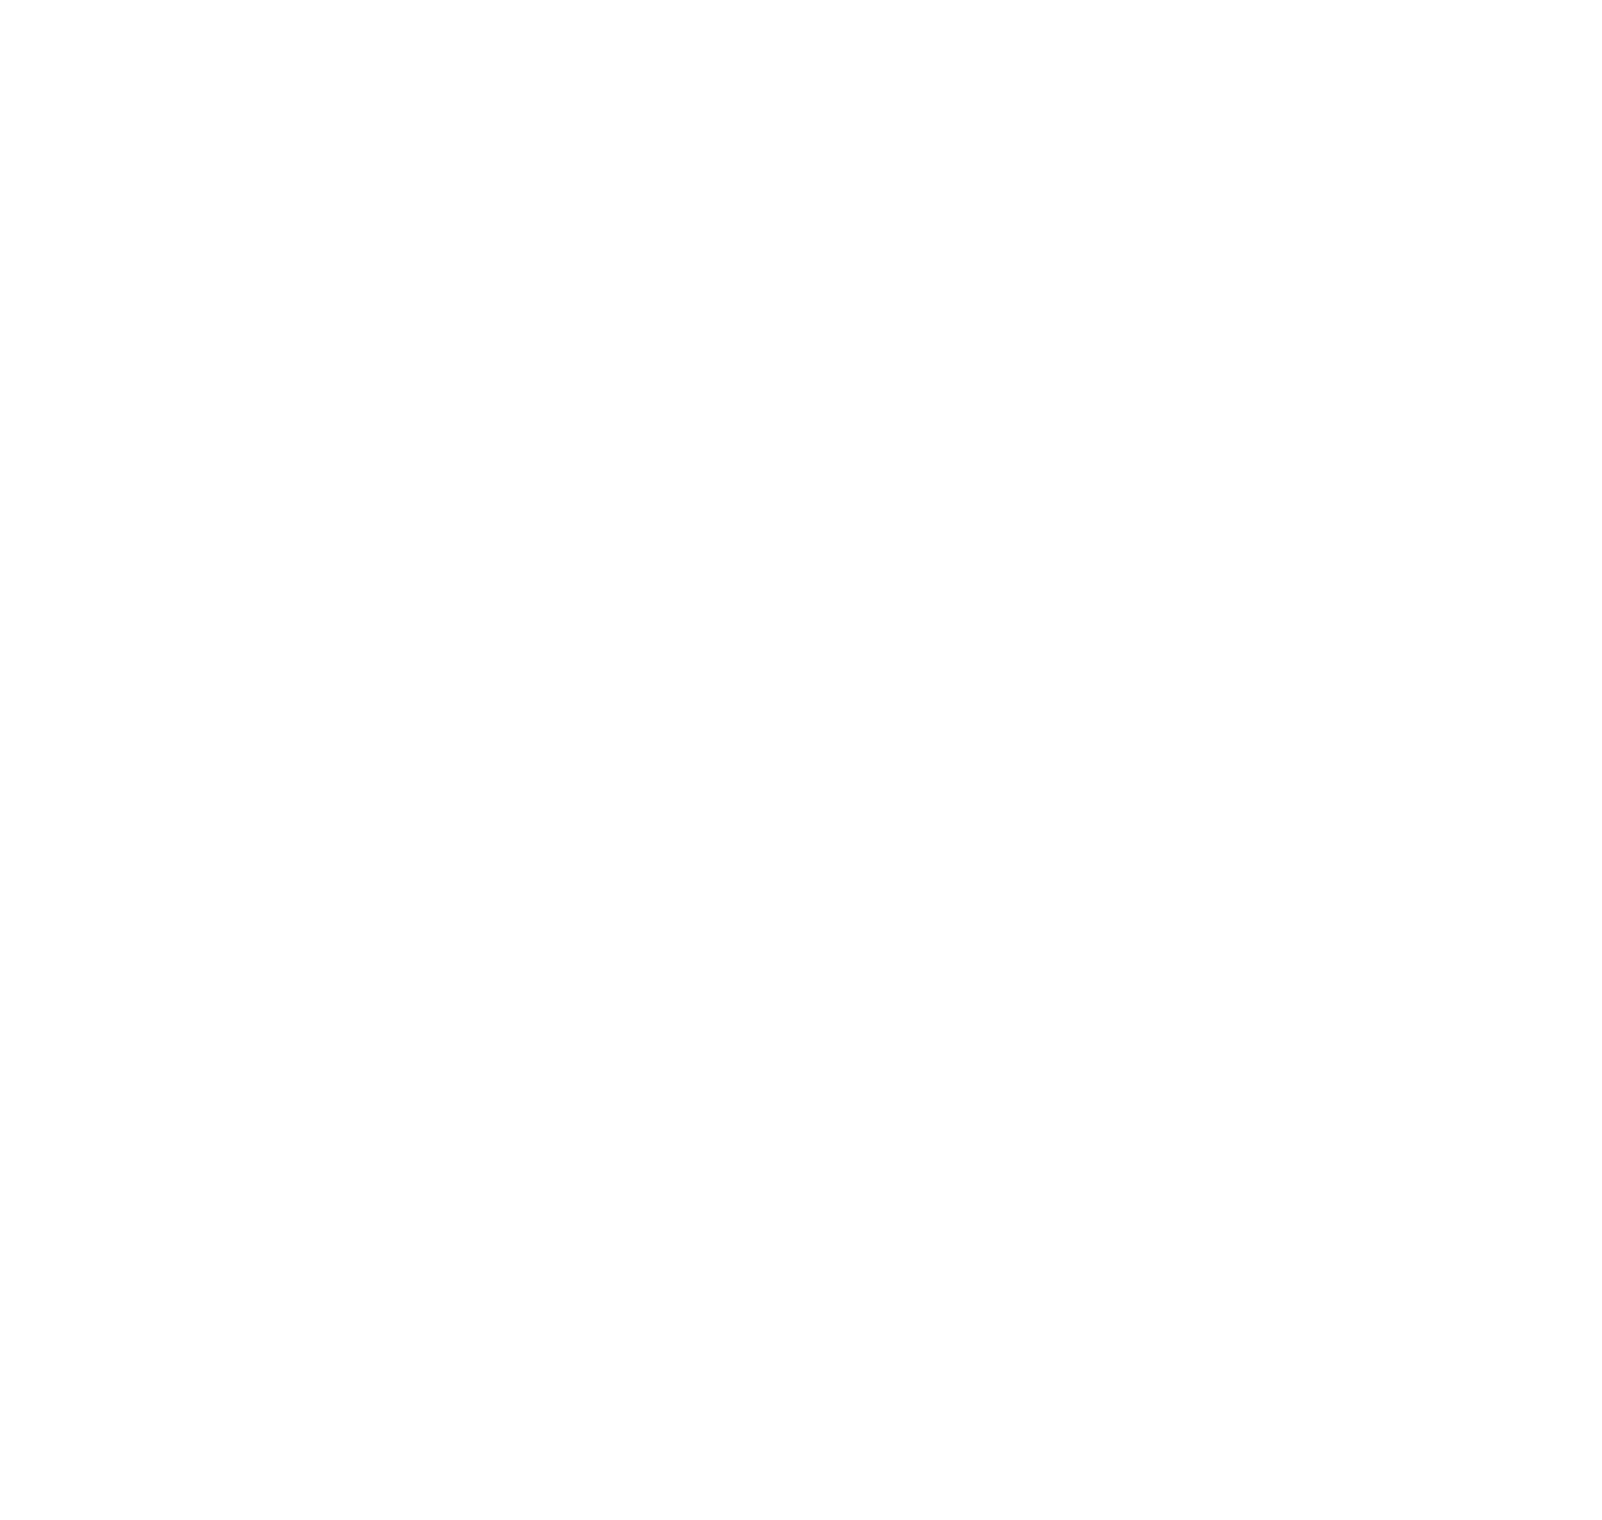 Custom e-commerce websites for serious businesses!